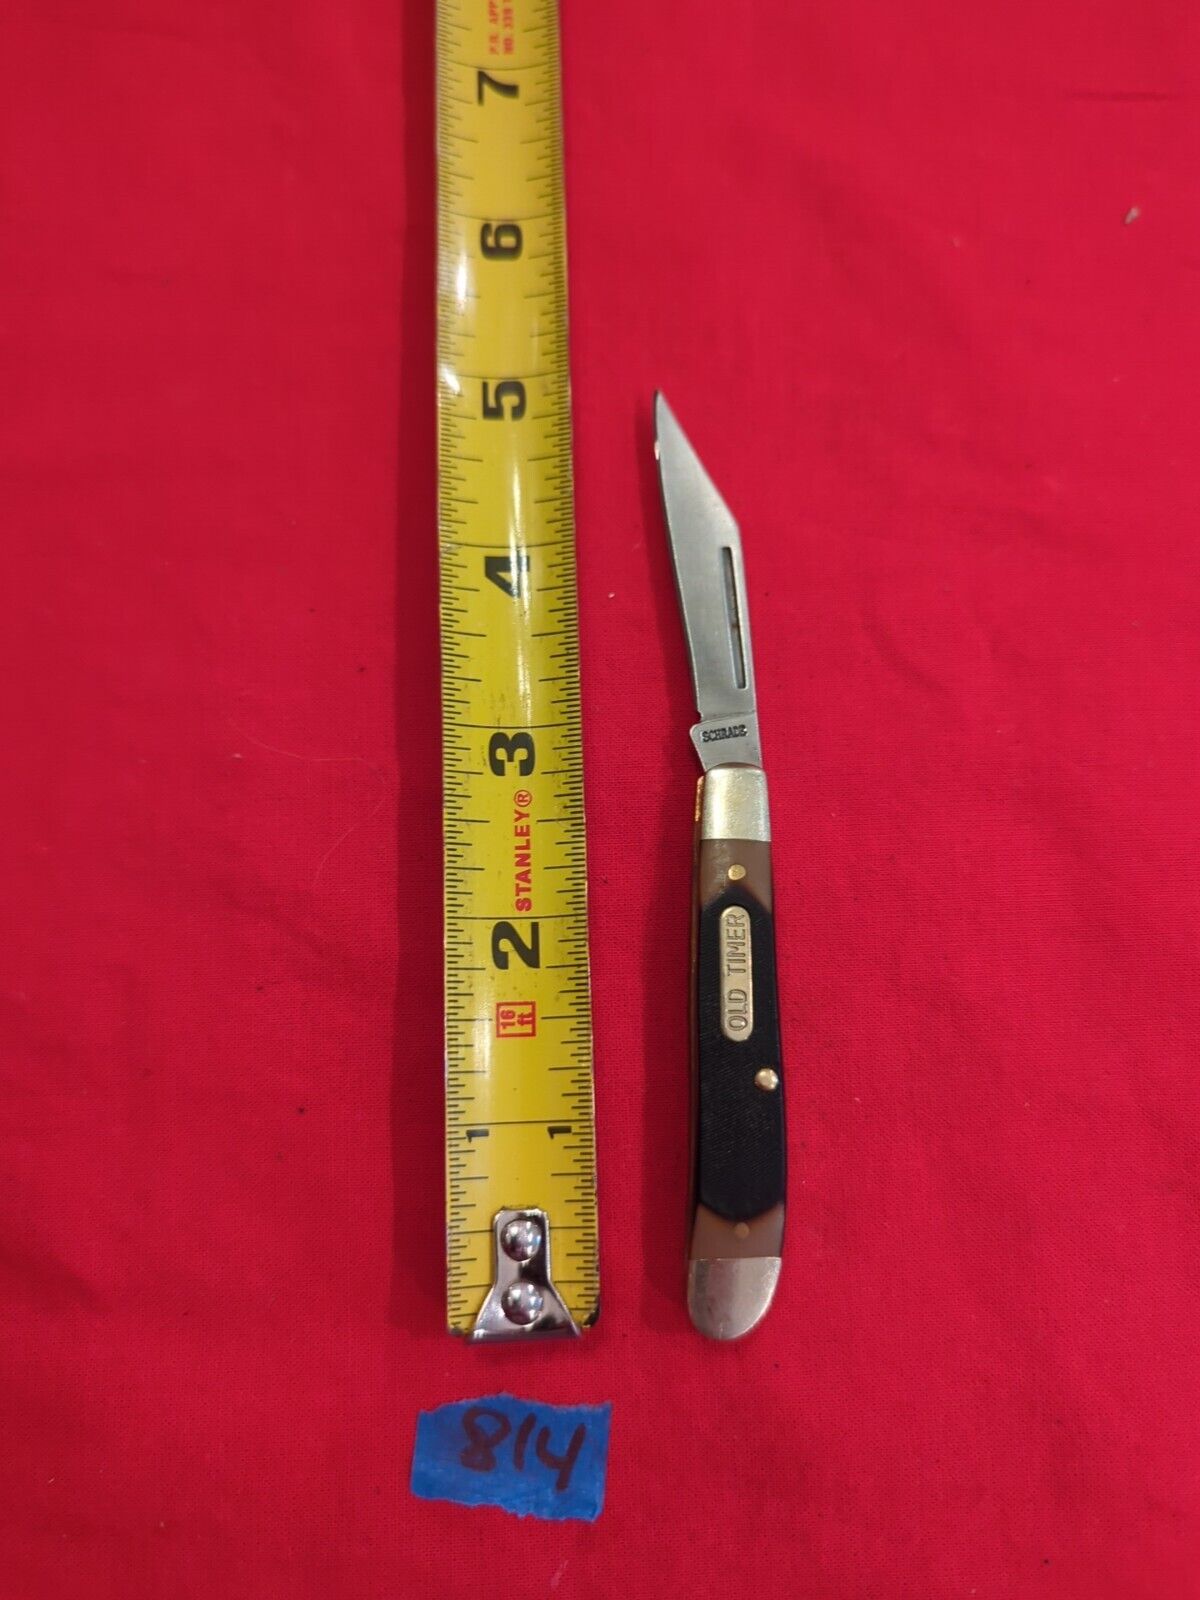 Schrade 11401940122 Pocket Knife